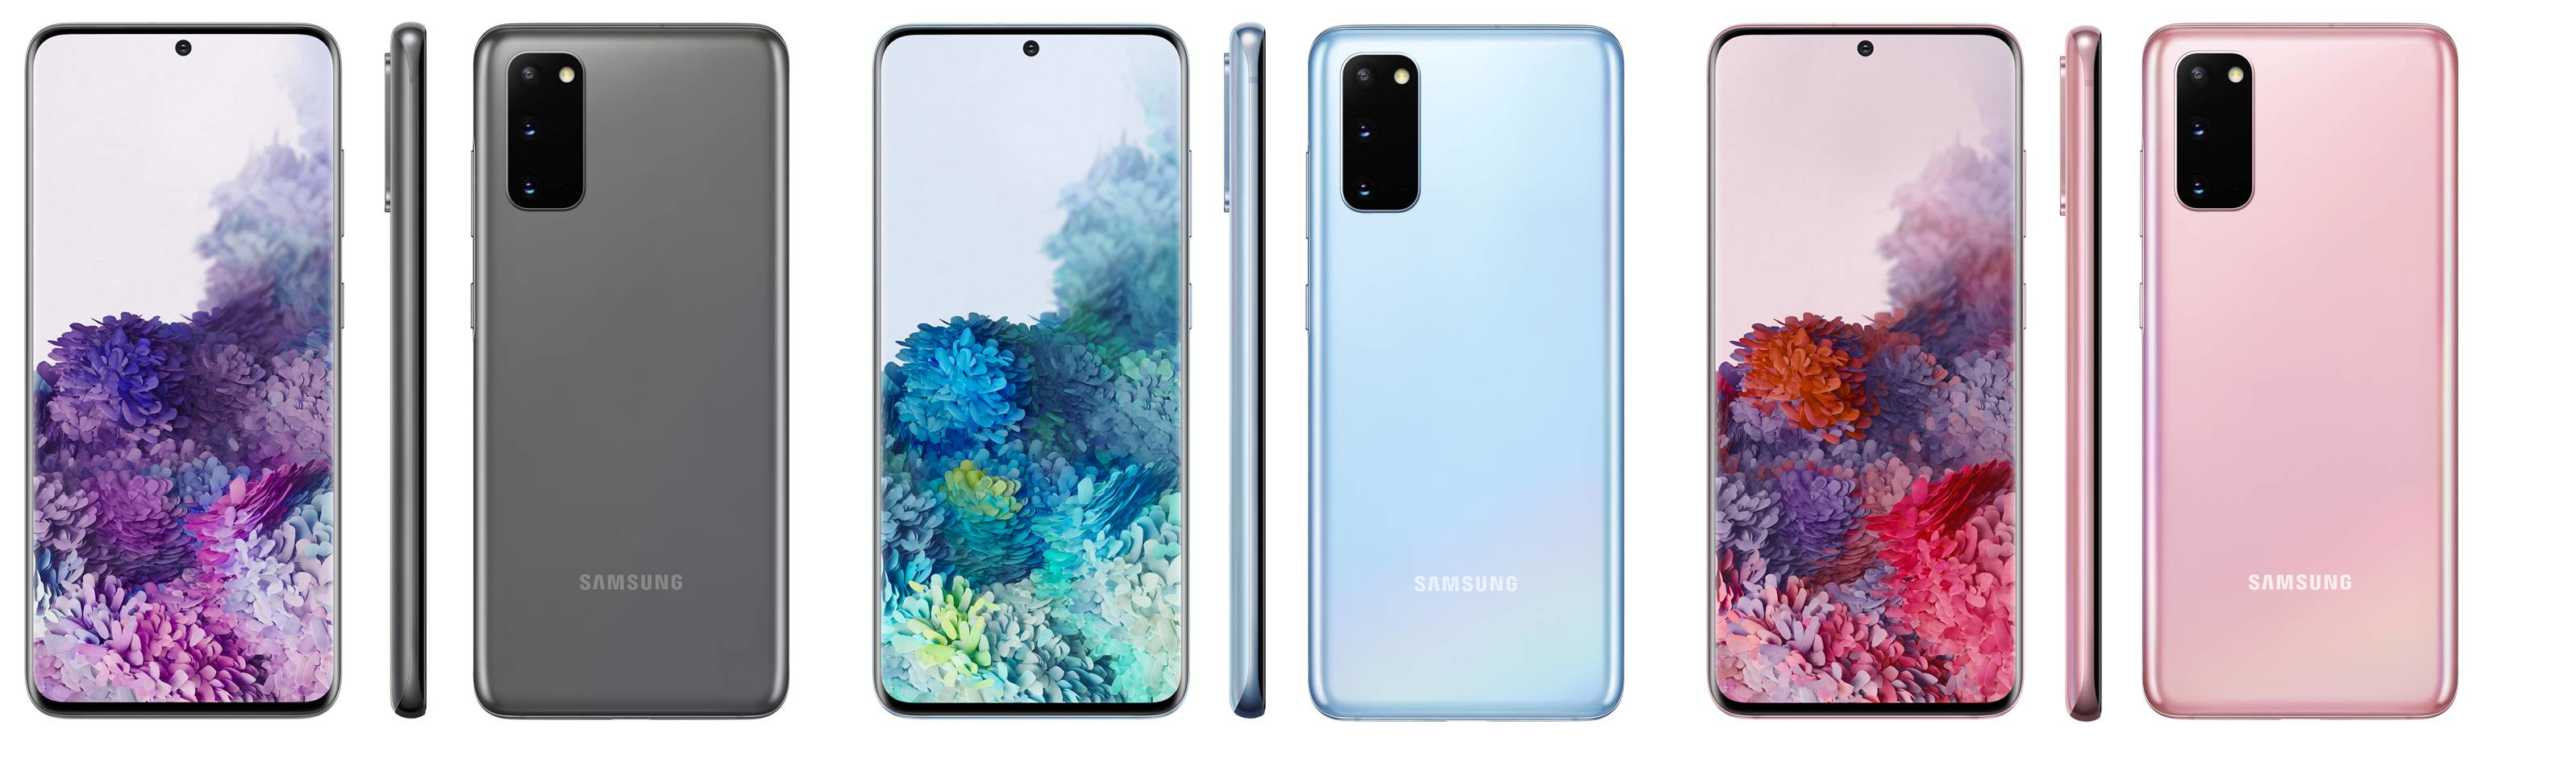 Samsung GALAXY S20 officiële persfoto's